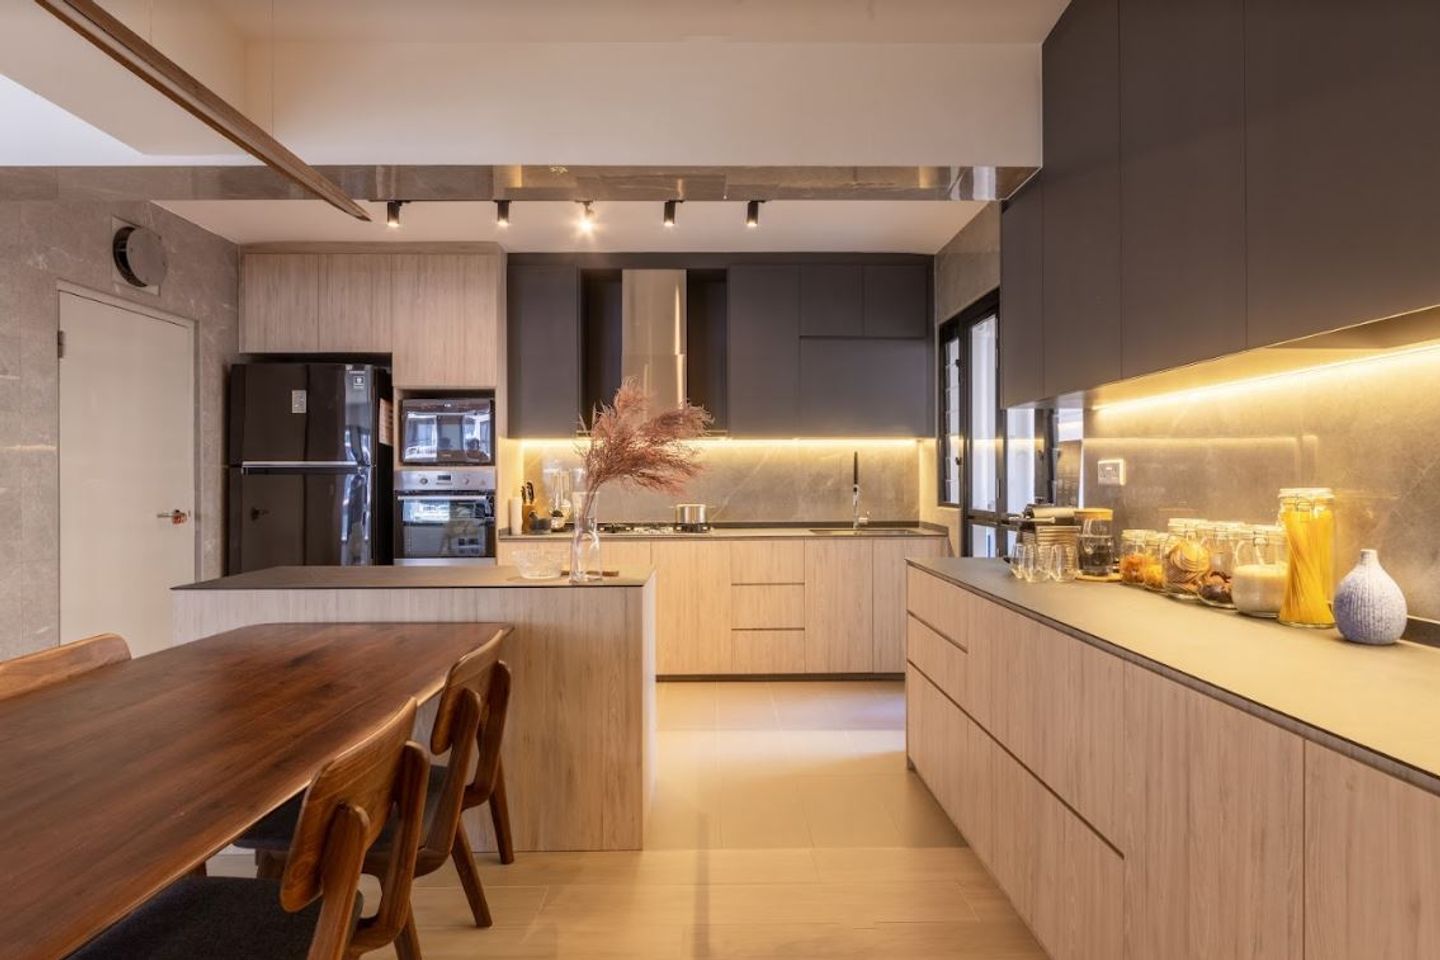 Modern Spacious Kitchen Cabinet Design With Max Storage